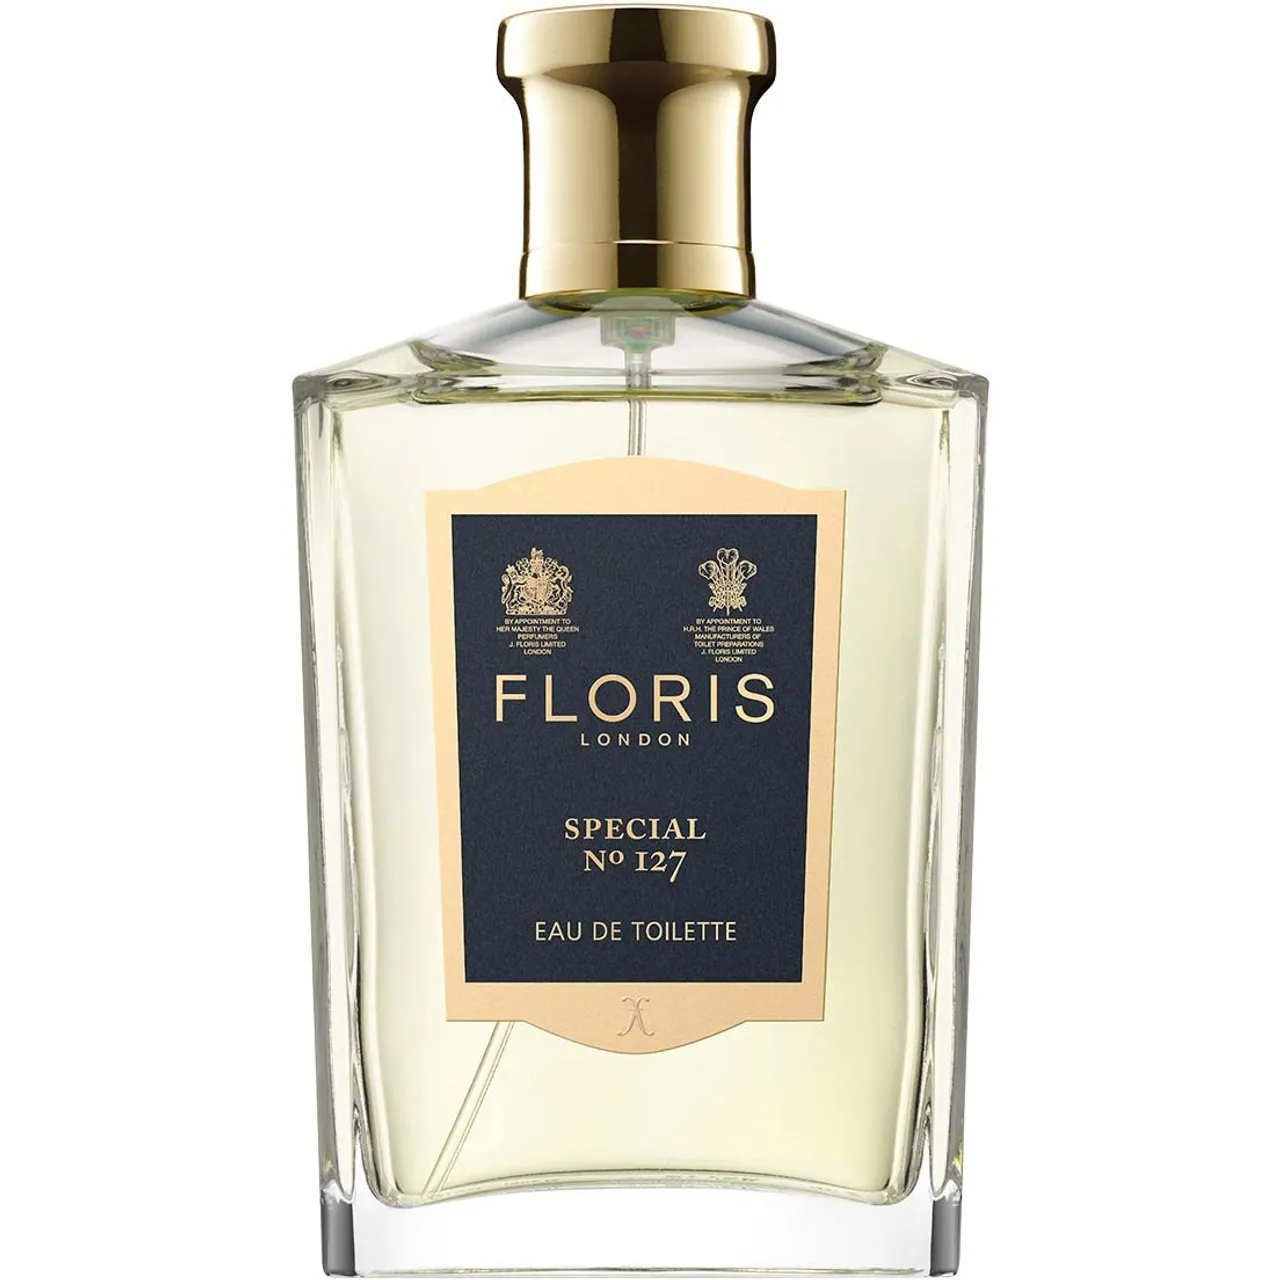 Floris London Special No. 127 Eau de Toilette 100 ml